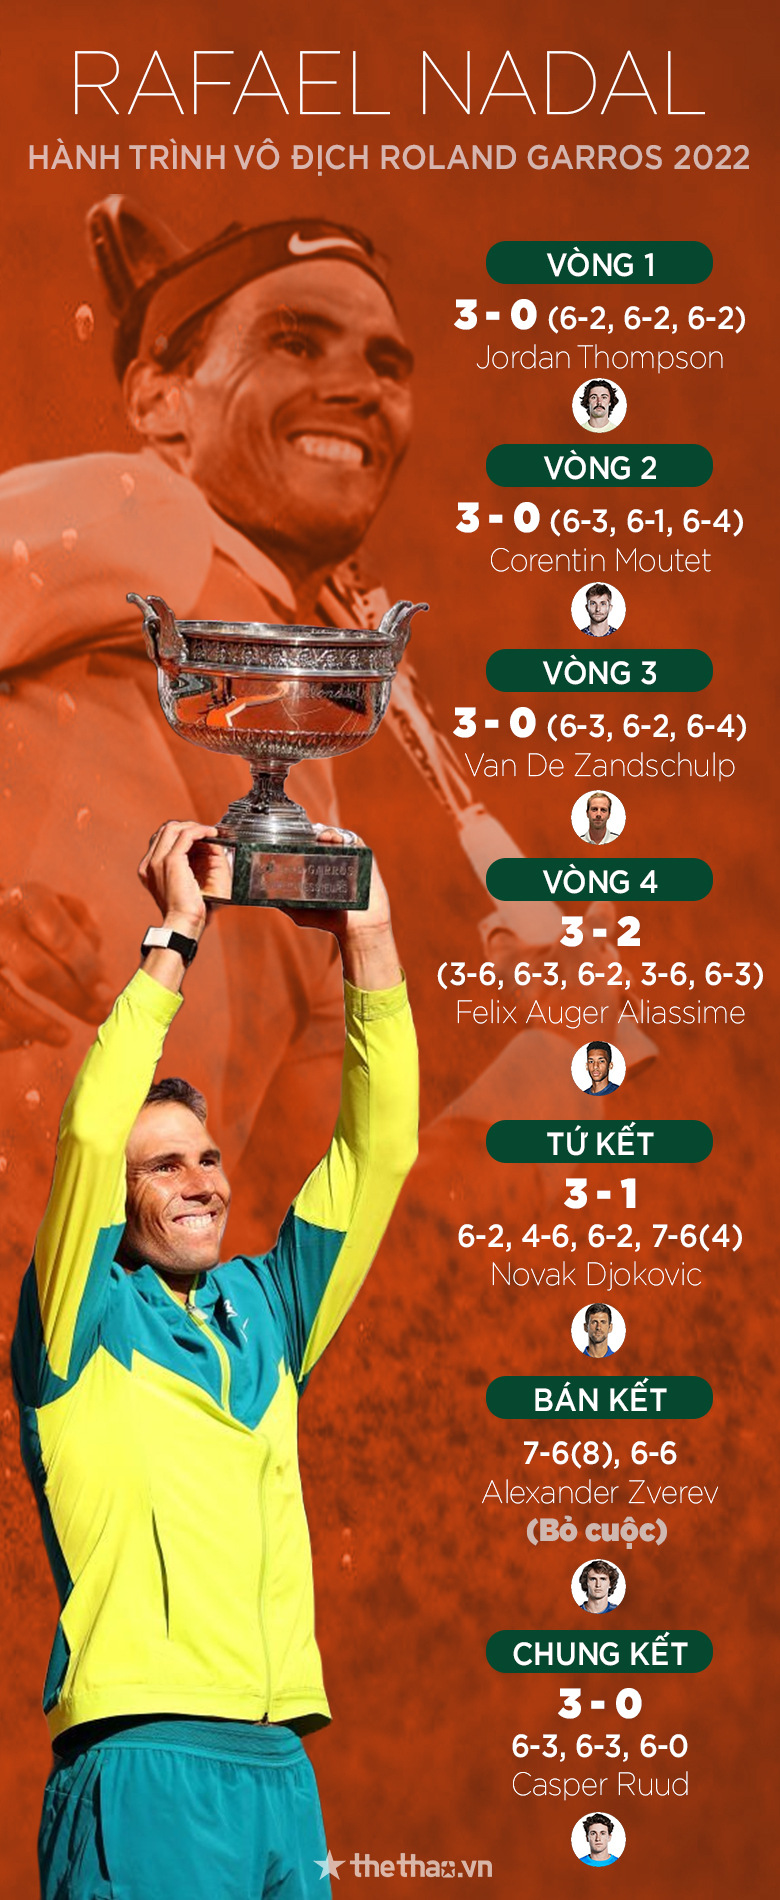 Hành trình vô địch Roland Garros 2022 của Nadal: Bước ngoặt mang tên Djokovic - Ảnh 1